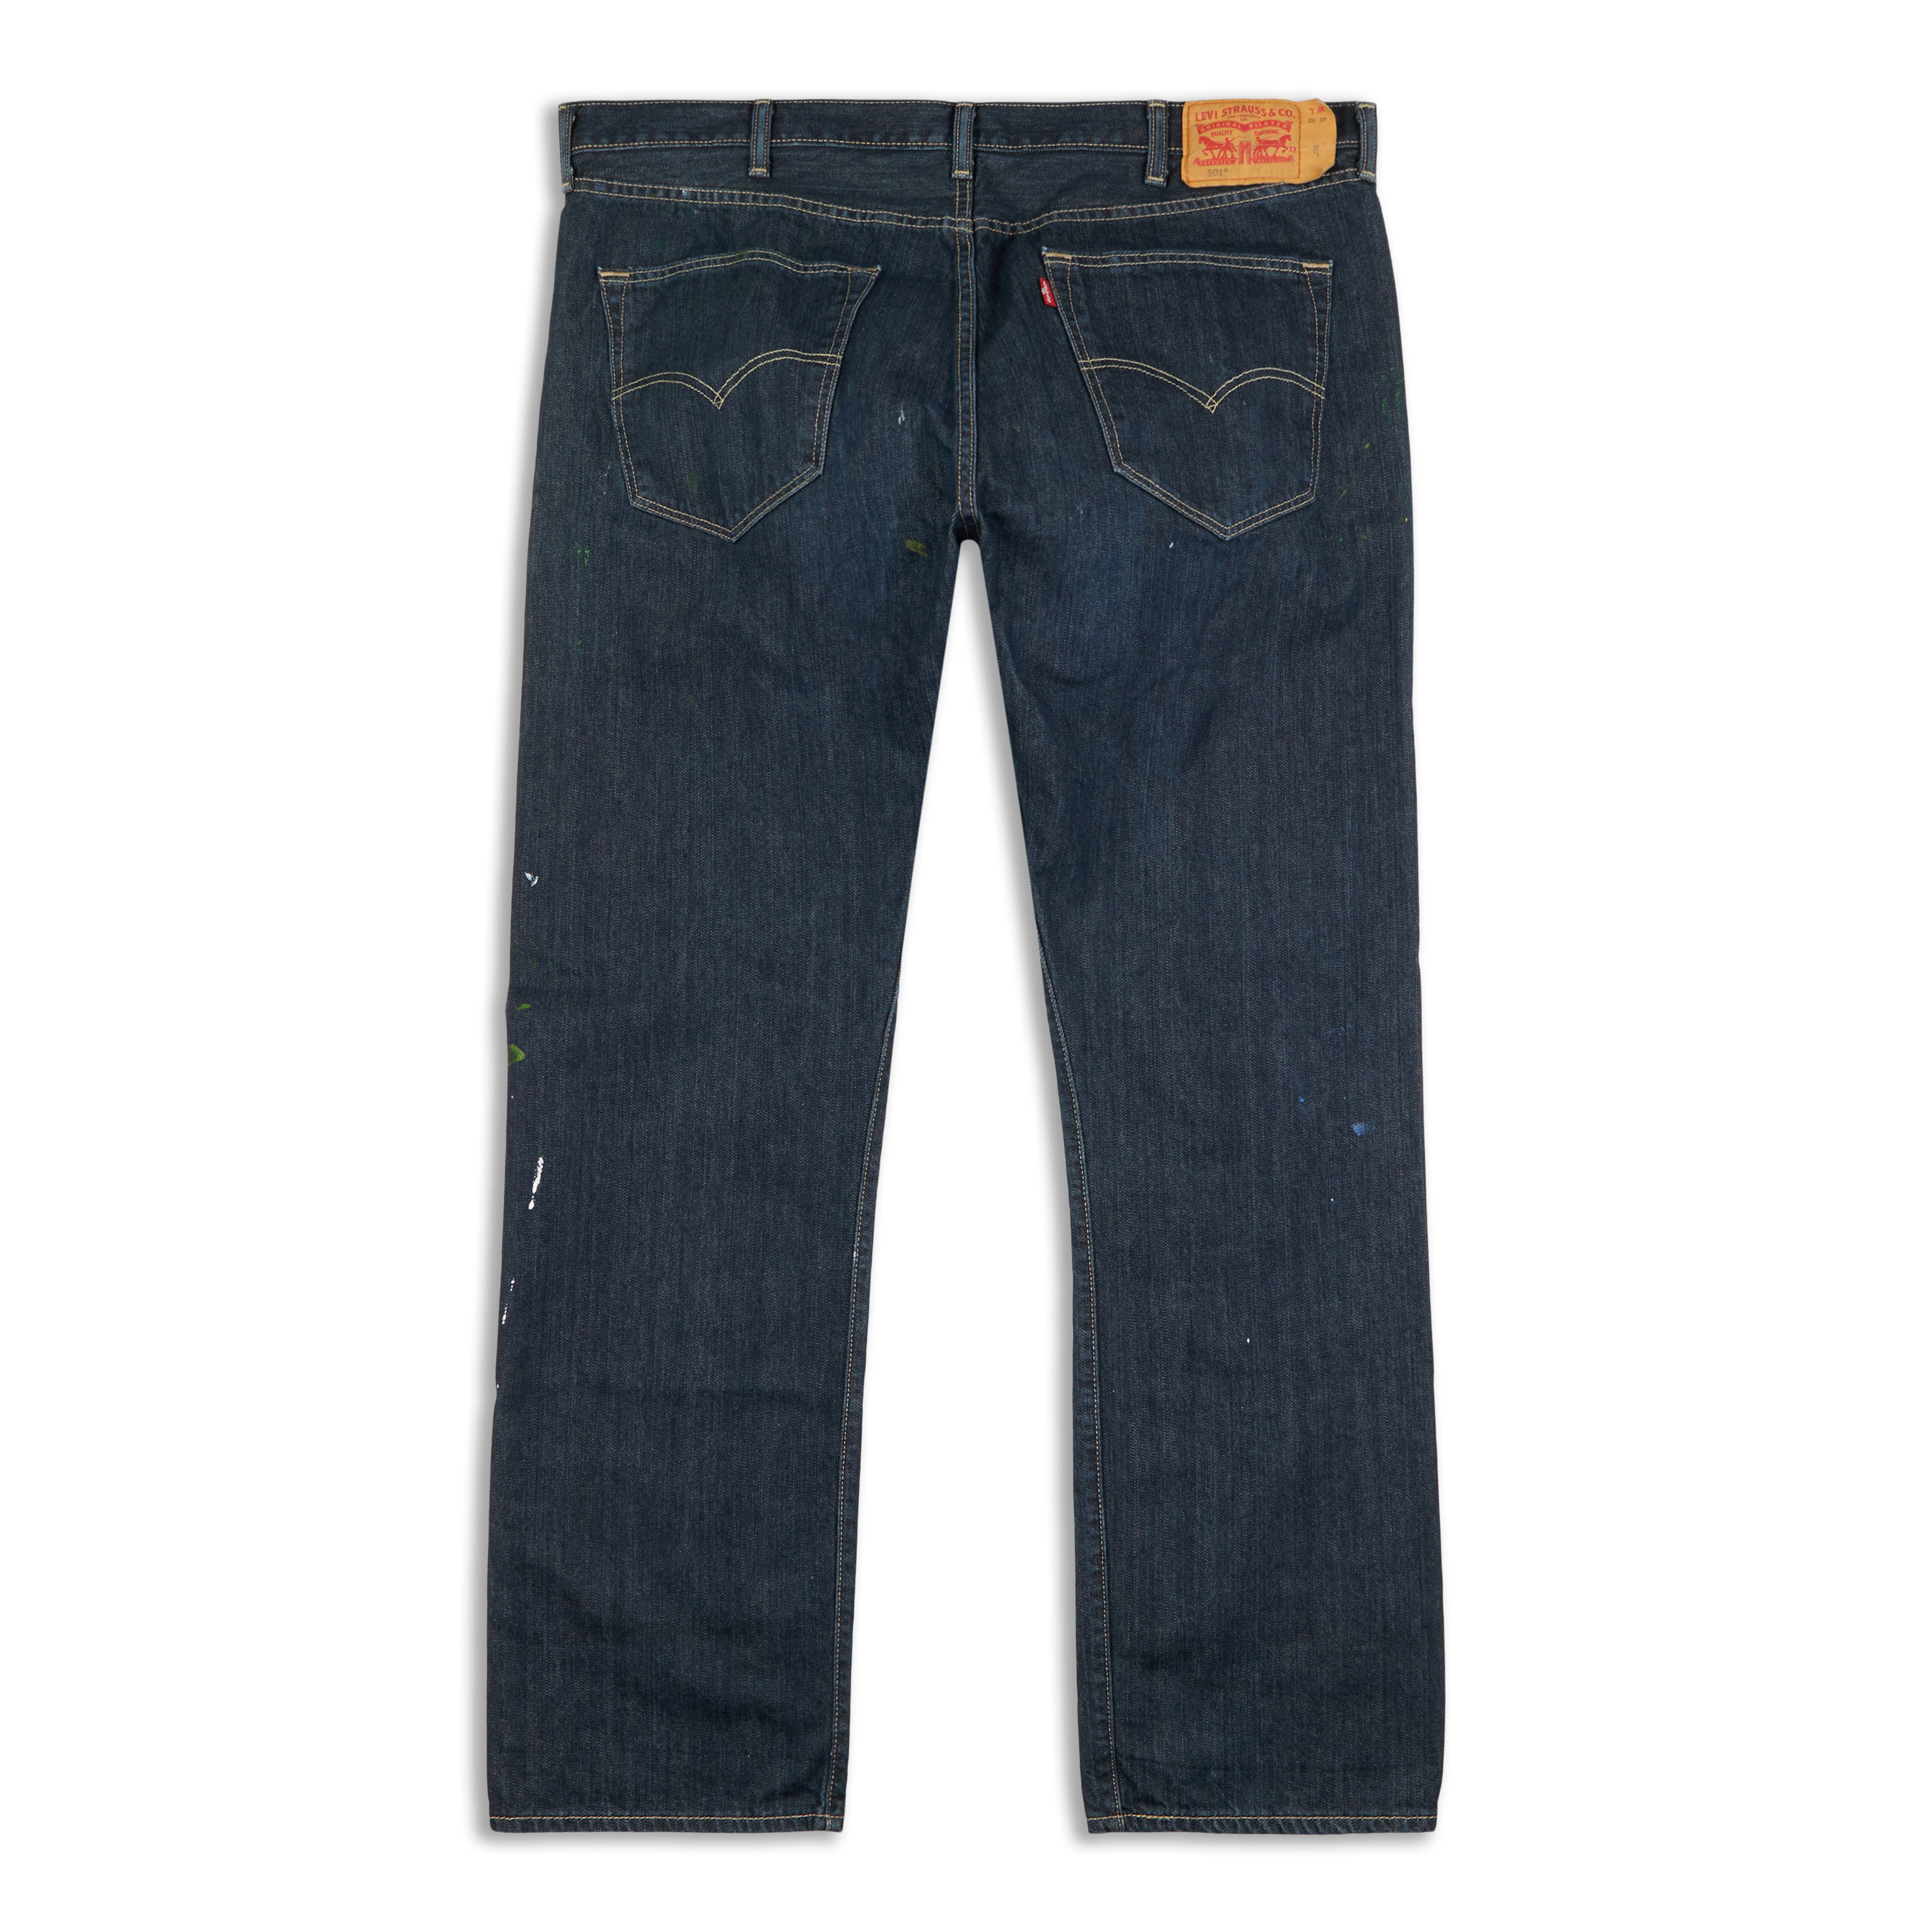 Levis 501® Original Fit Men's Jeans Clean Rigid